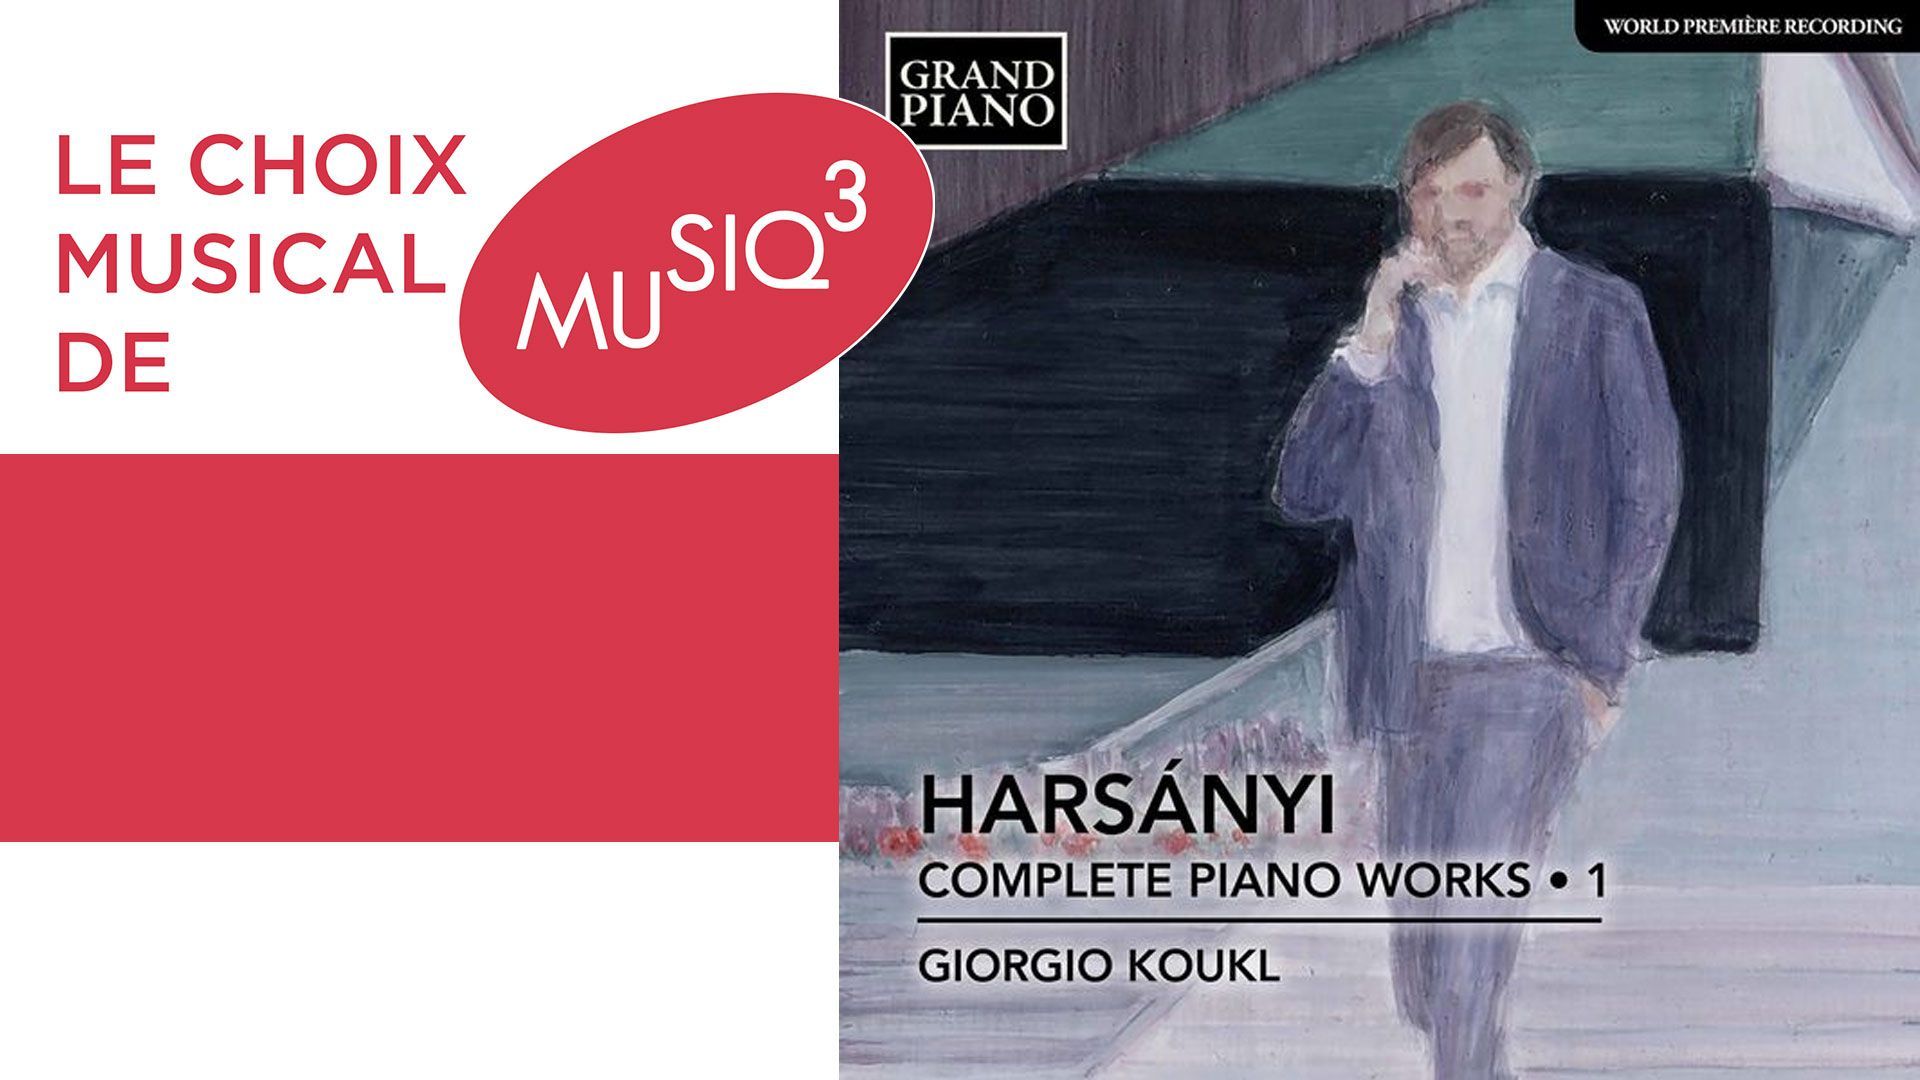 Premier volume de l'intégrale piano de Tibor Harsanyi par le pianiste Giorgio Koukl